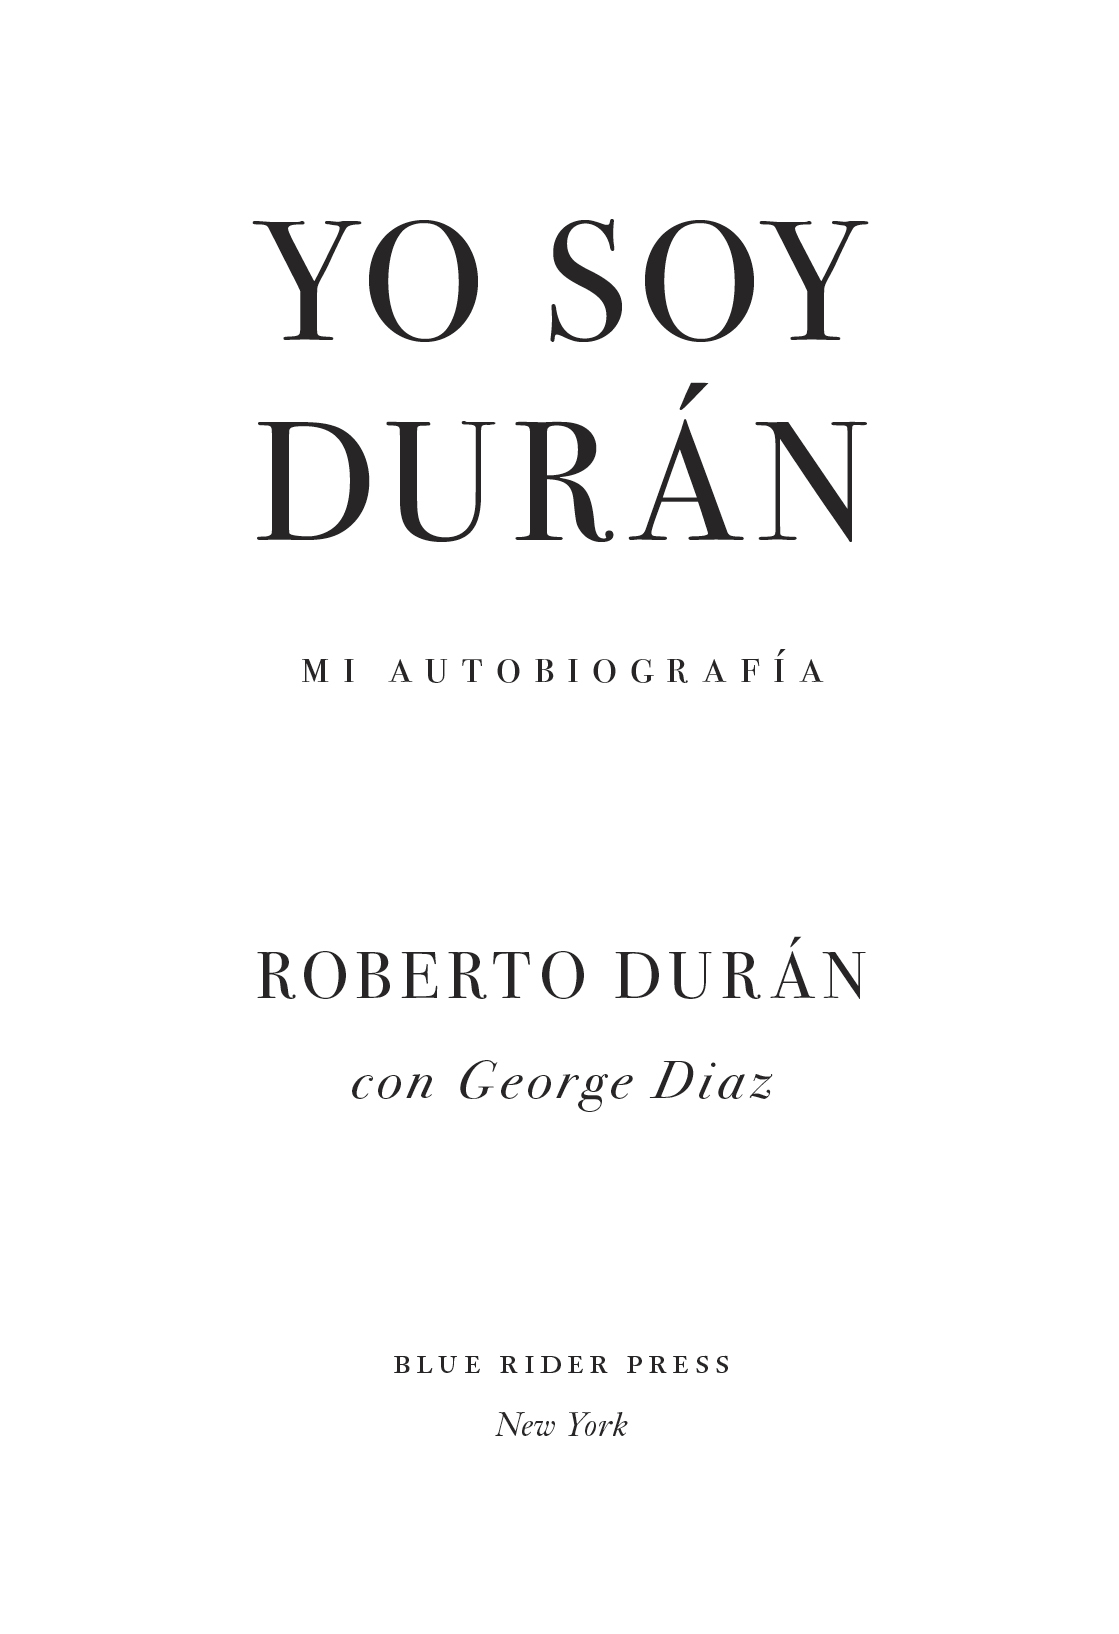 Yo Soy Duran Mi Autobiografia - image 2